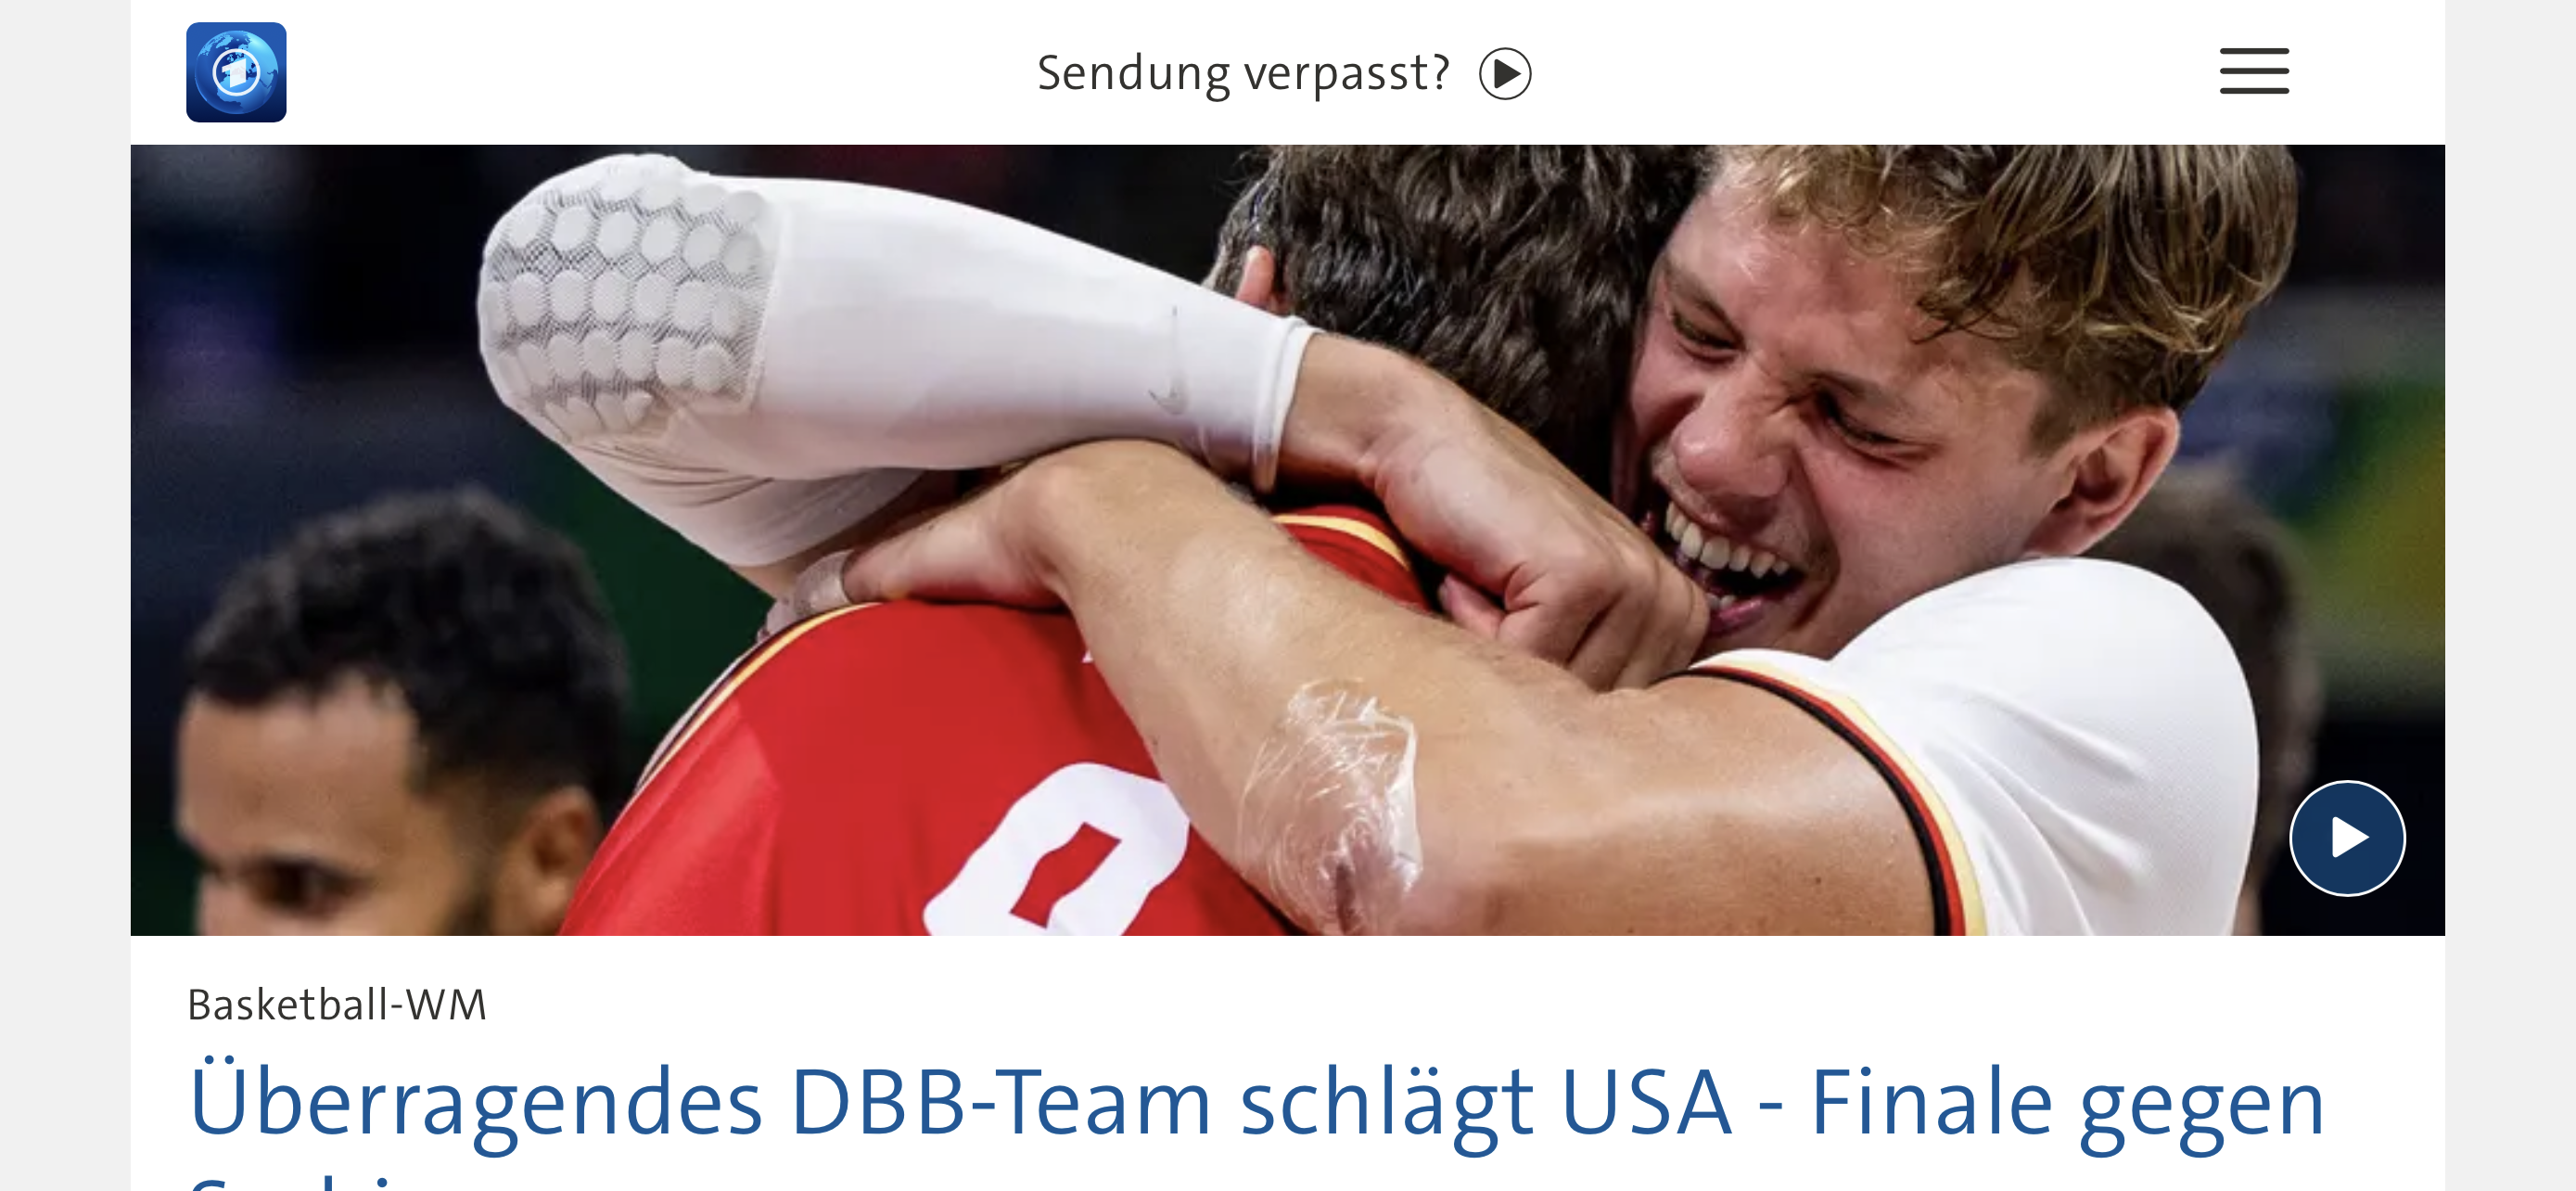 What!? Deutschland gewinnt gegen USA im Basketball? 🏀 DAS ist mal bemerkenswert